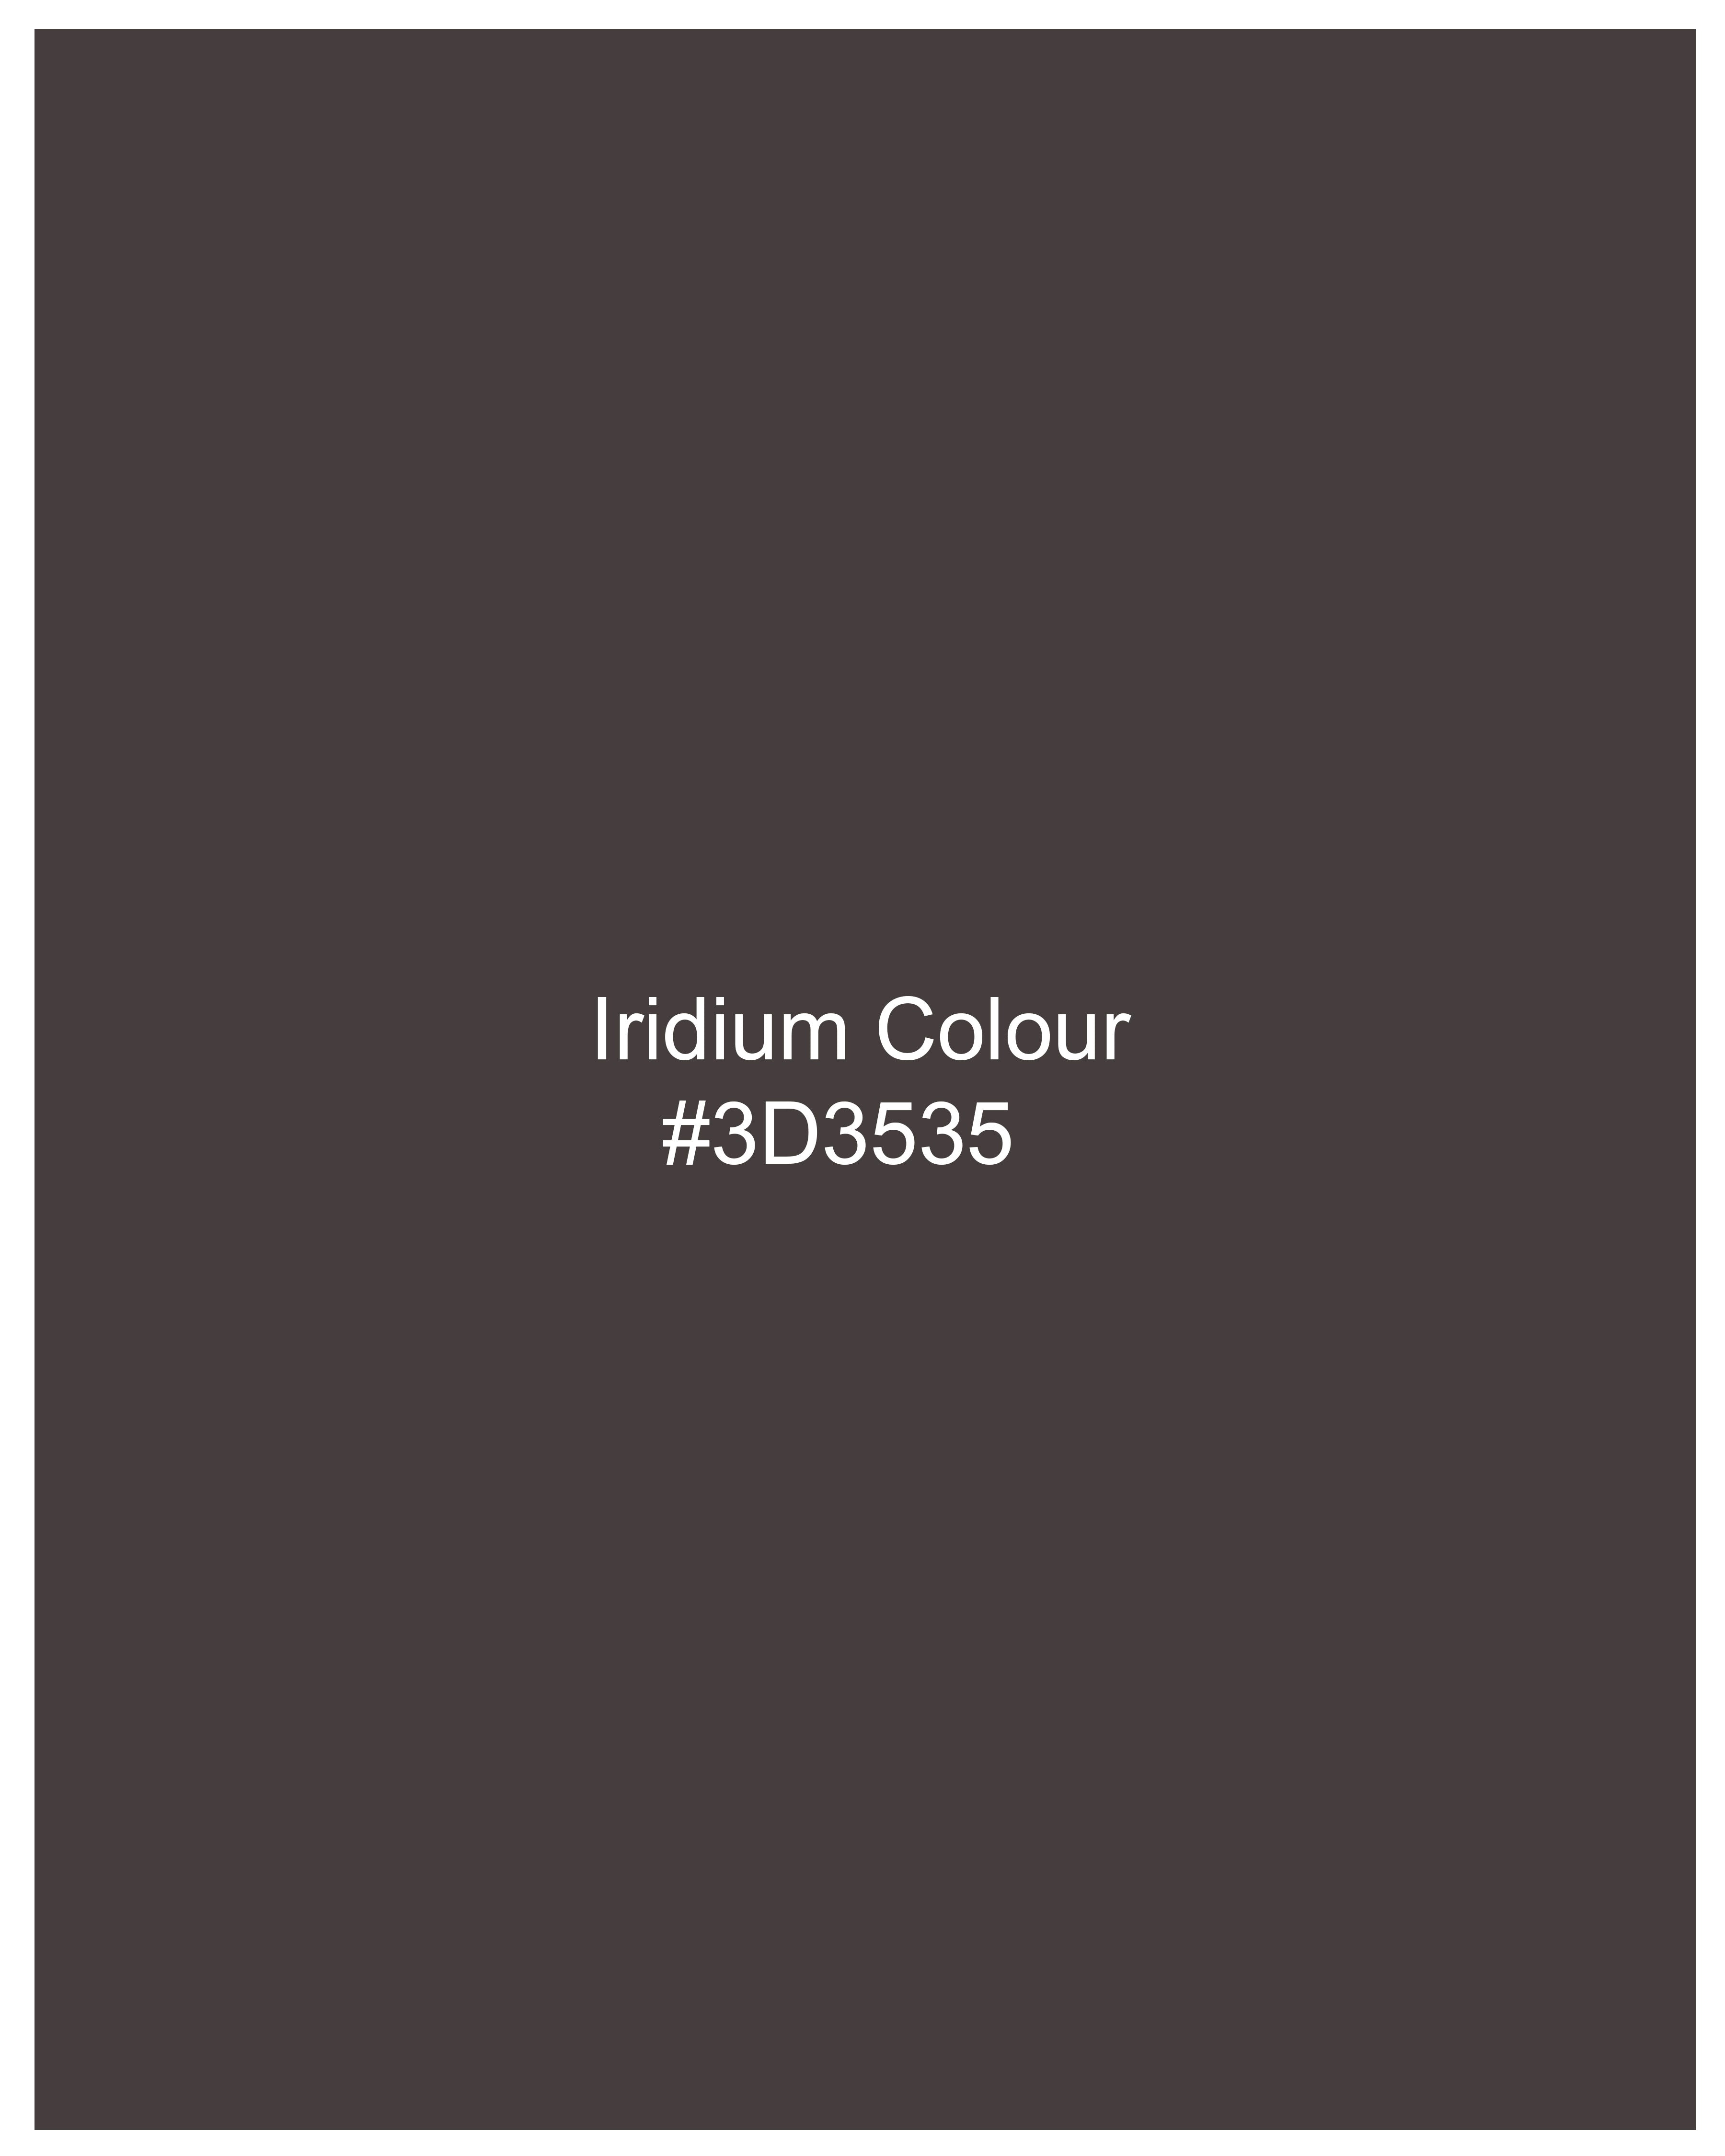 Iridium Brown Premium Cotton Designer Suit with Functional Belt Fastening ST2367-D3-36, ST2367-D3-38, ST2367-D3-40, ST2367-D3-42, ST2367-D3-44, ST2367-D3-46, ST2367-D3-48, ST2367-D3-50, ST2367-D3-52, ST2367-D3-54, ST2367-D3-56, ST2367-D3-58, ST2367-D3-60